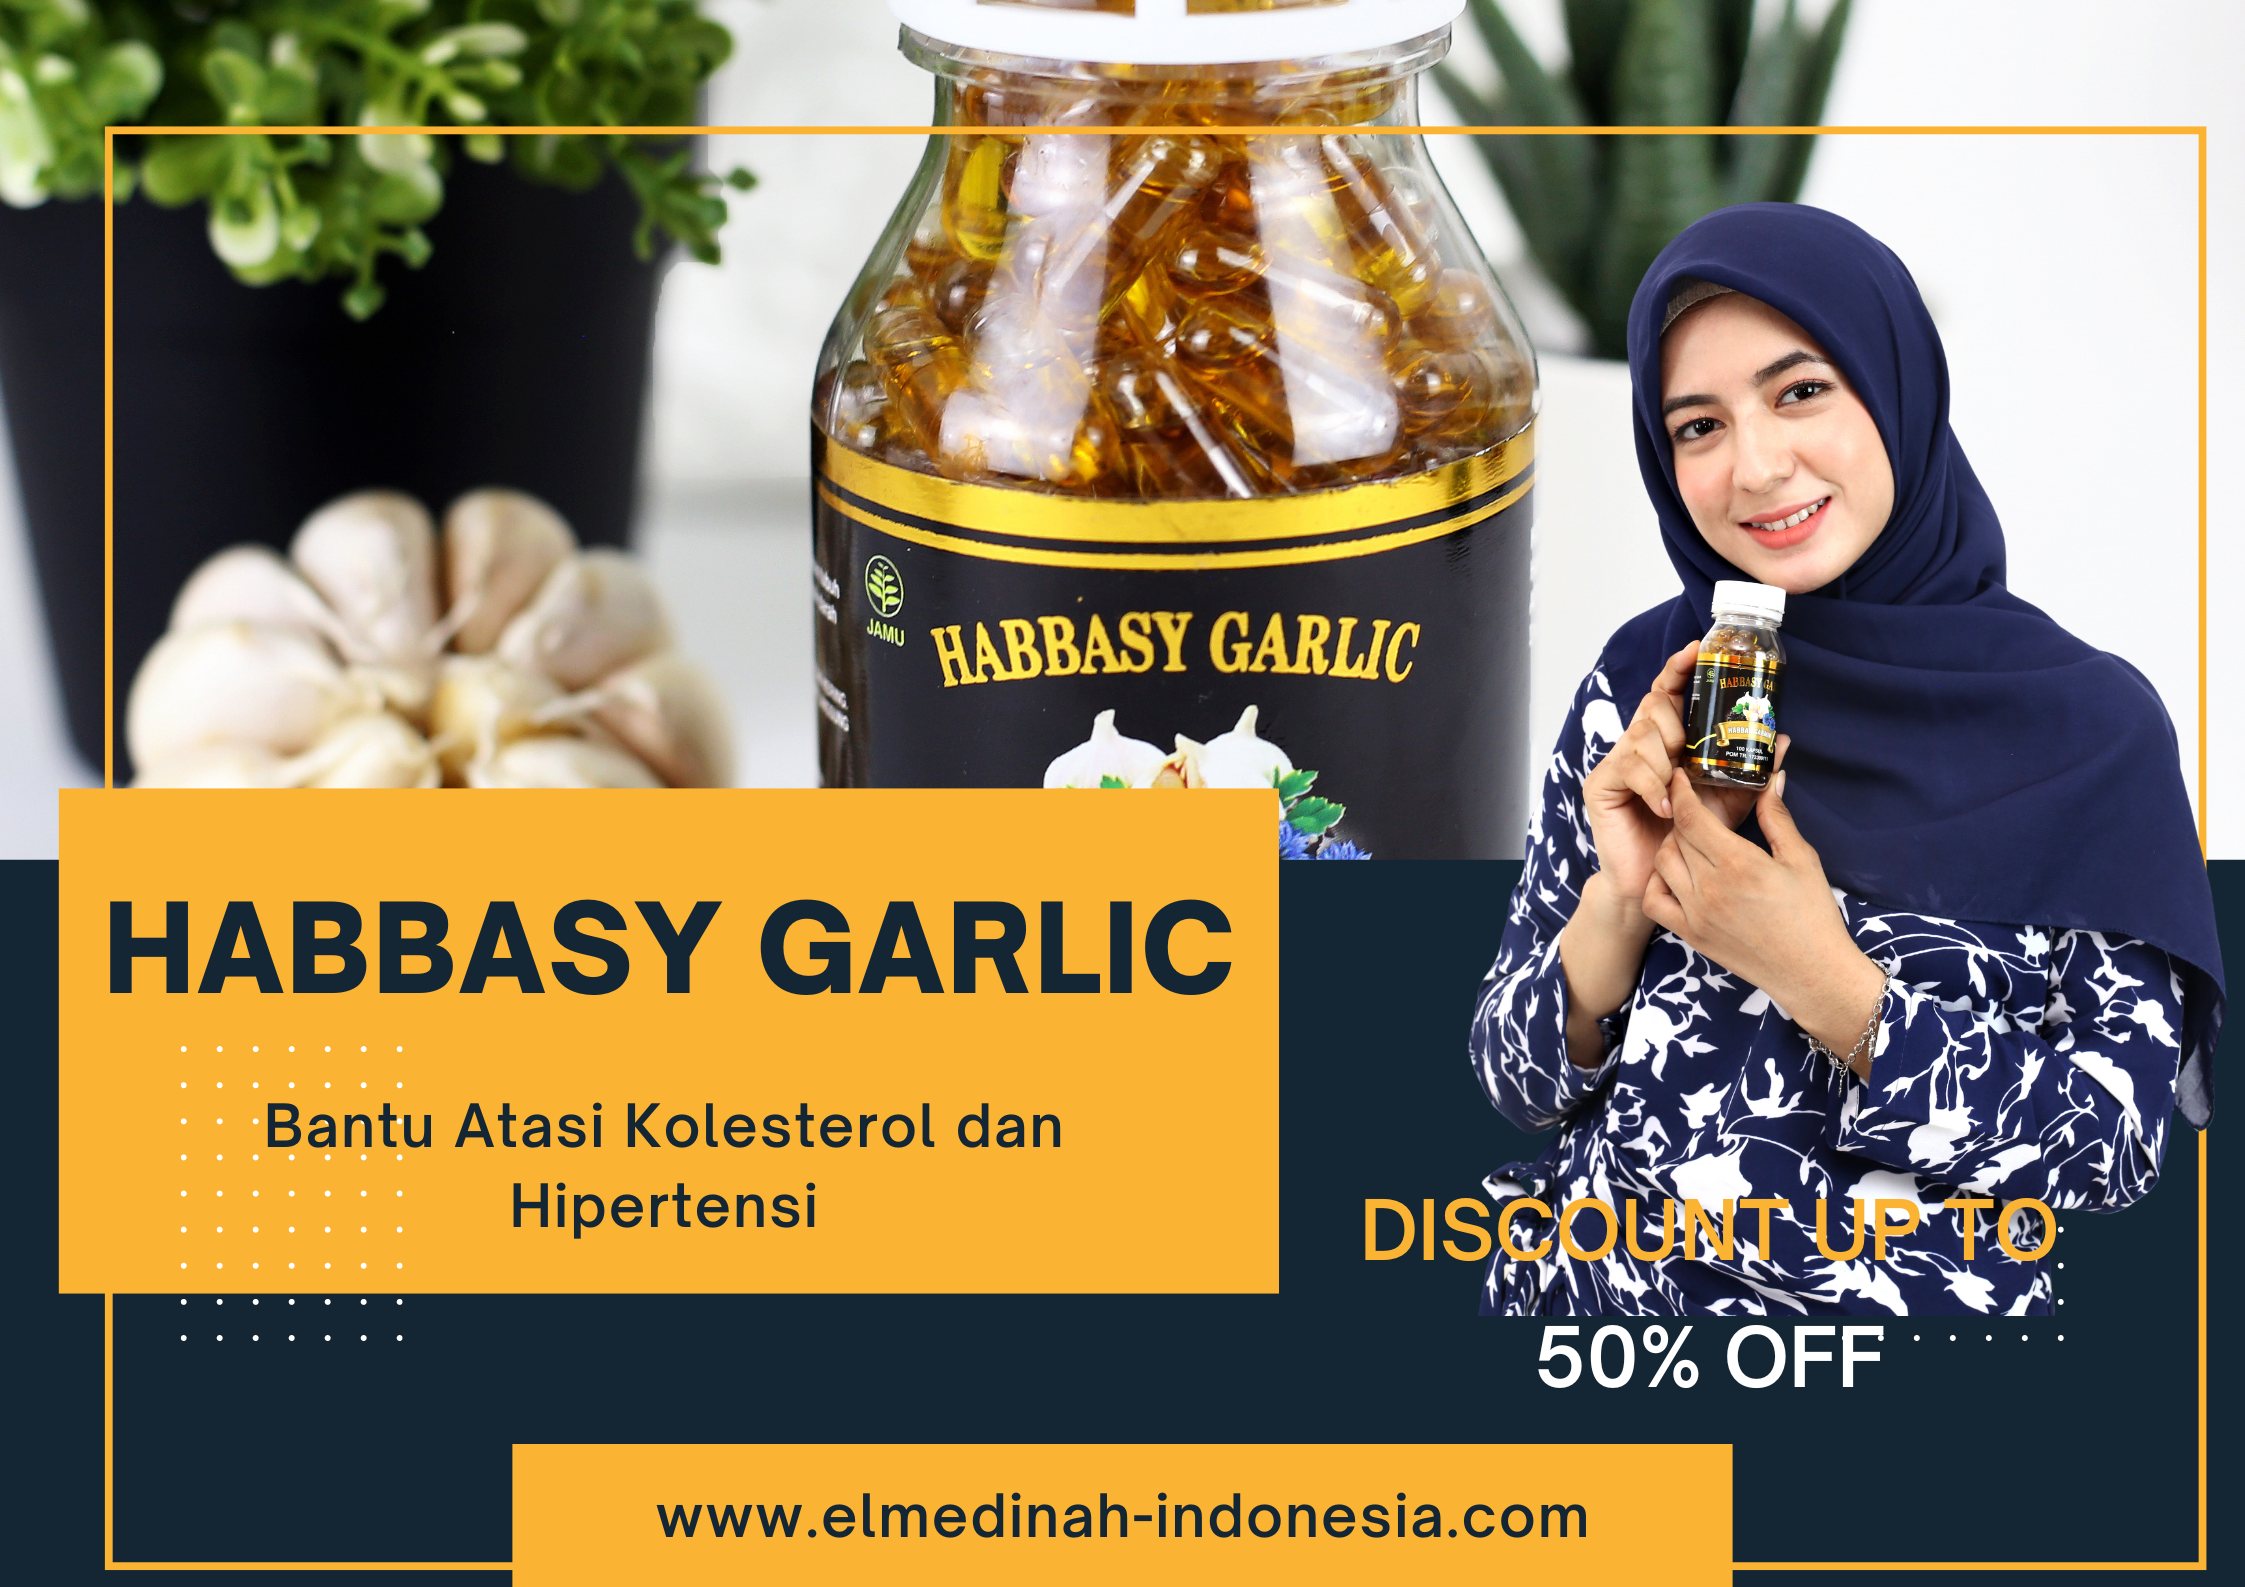 Elmedinah Indonesia Meluncurkan Habbasy Garlic: Inovasi Baru dalam Menjaga Kesehatan